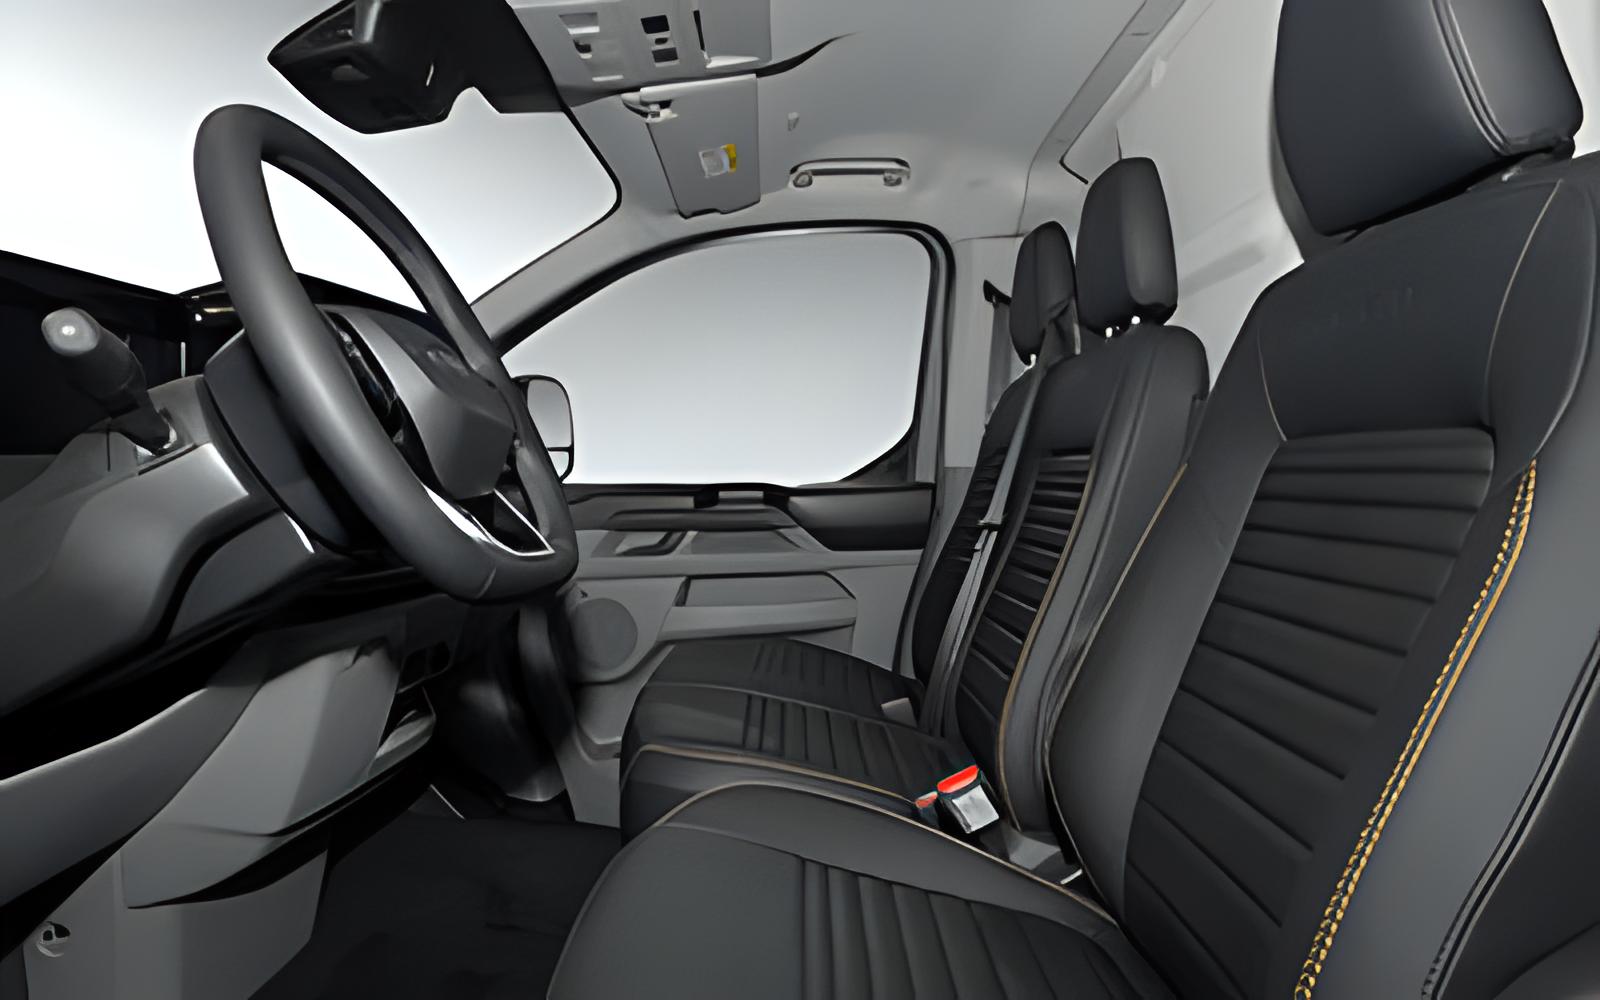 Sitzbezug für Ford Ranger Vordersitze. Vorn 1+1 inkl. Kopfstützen mit  Seiten-Airbag.